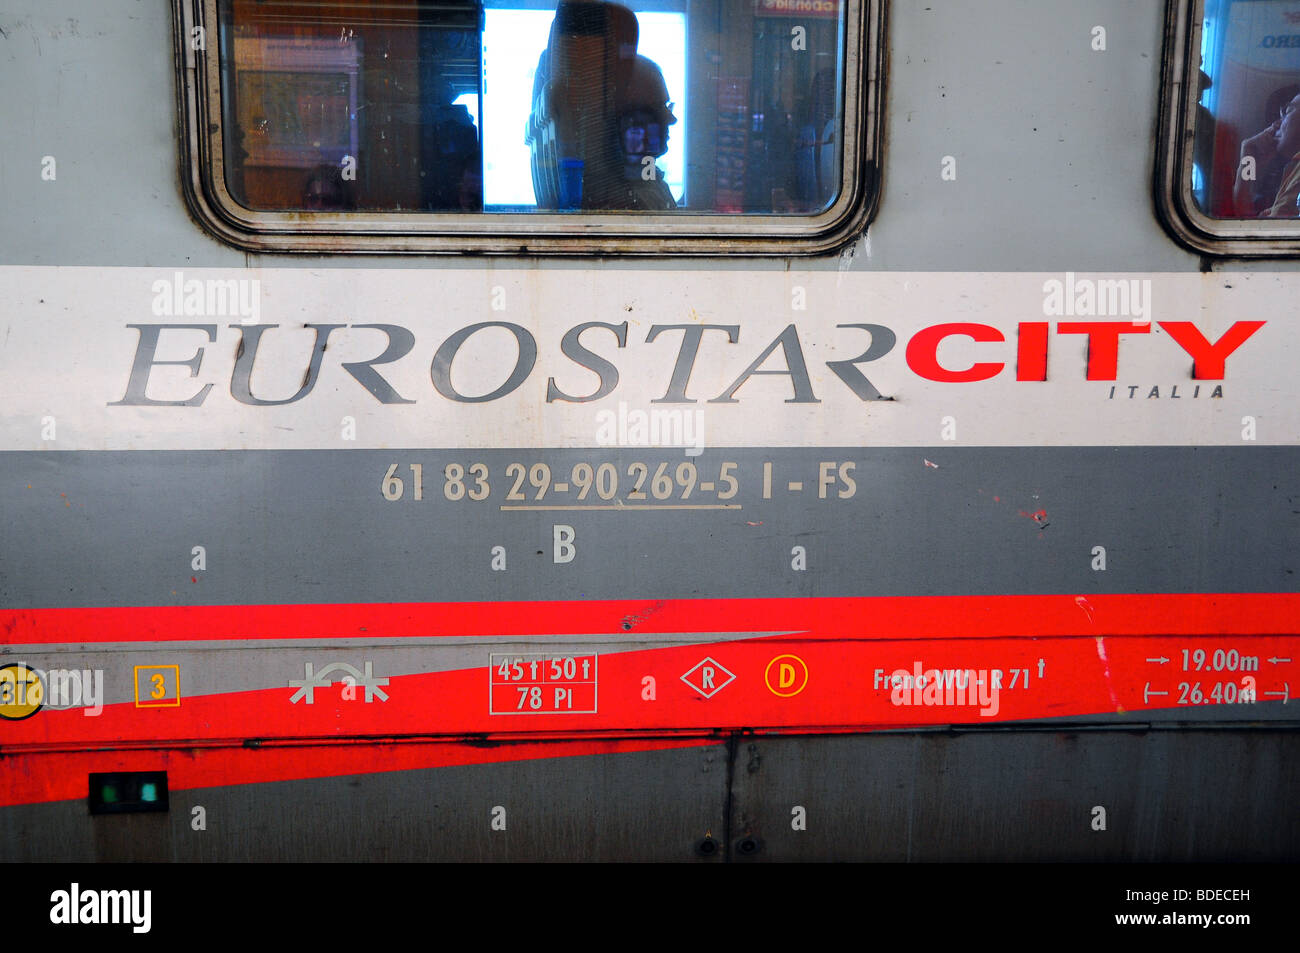 Italian Railways EUROSTAR CITY fast train - 'Trenitalia' - at Bologna Station, Italy Stock Photo